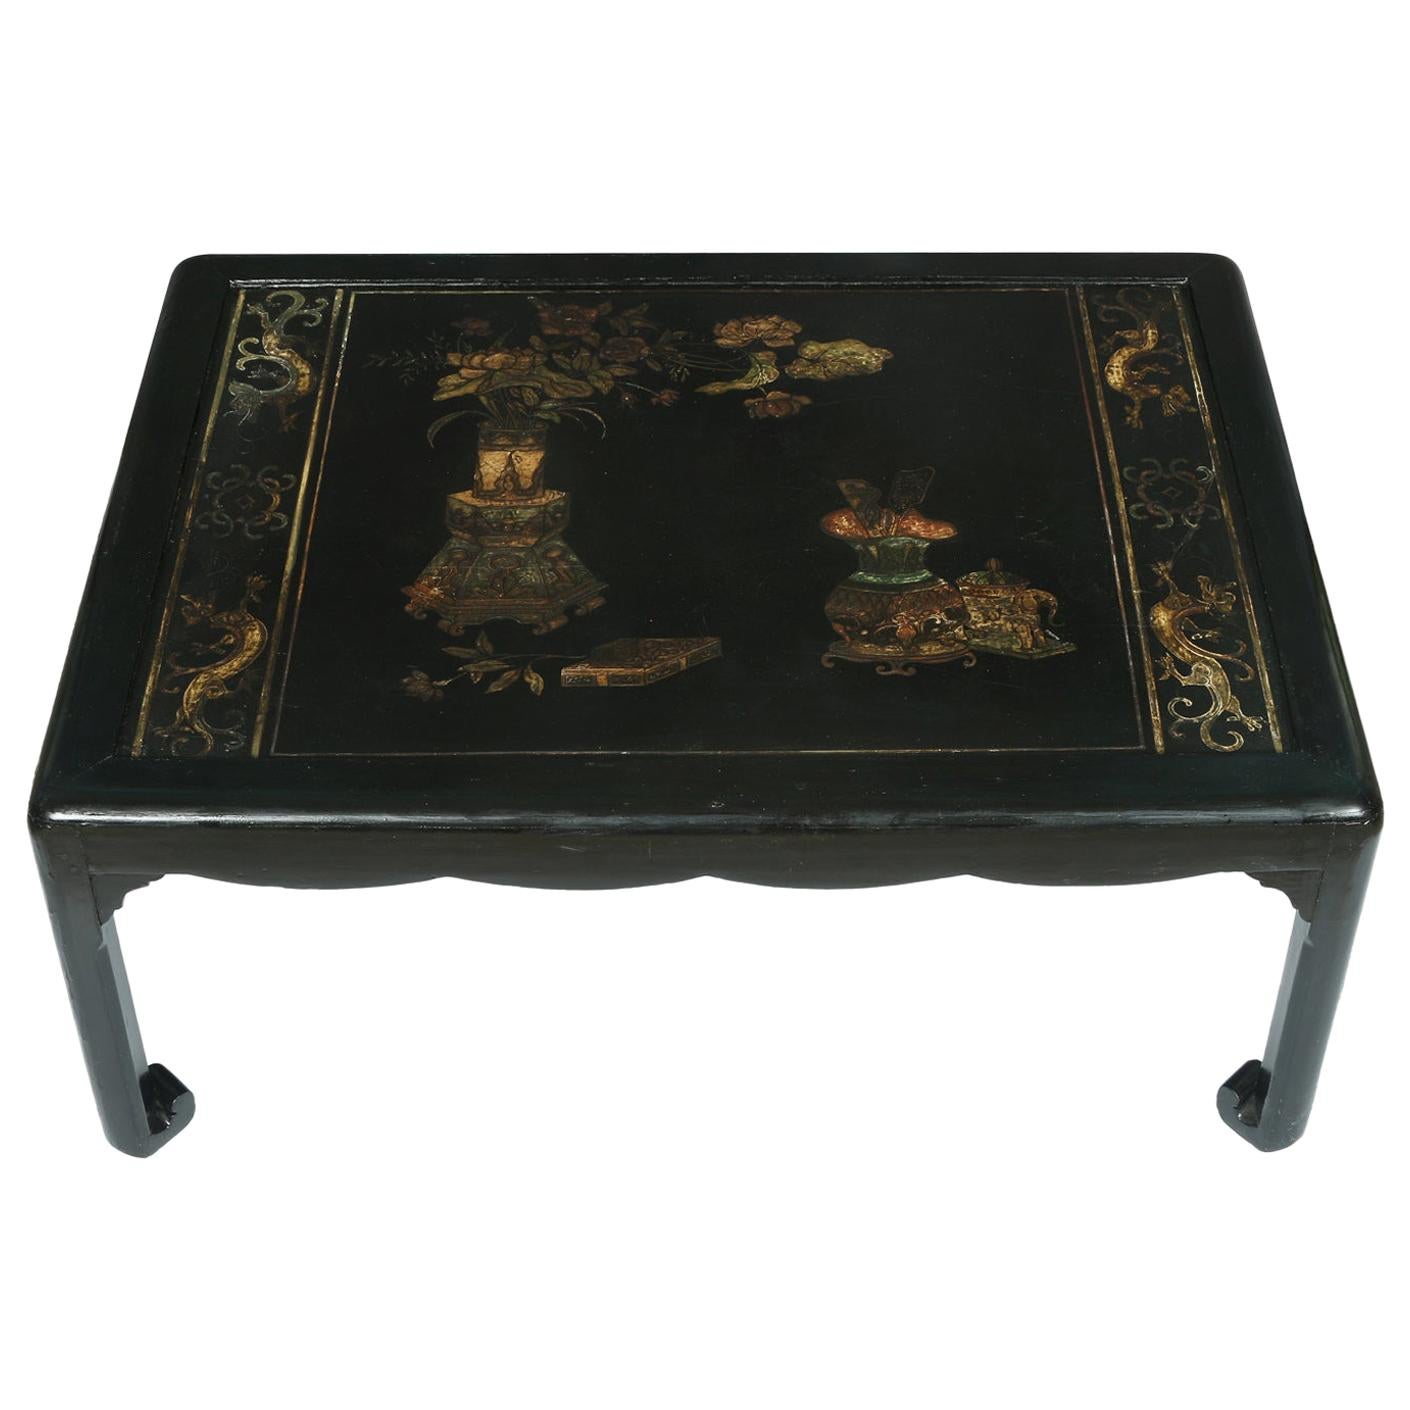 Table basse chinoise en bois avec décoration peinte style chinoiseries